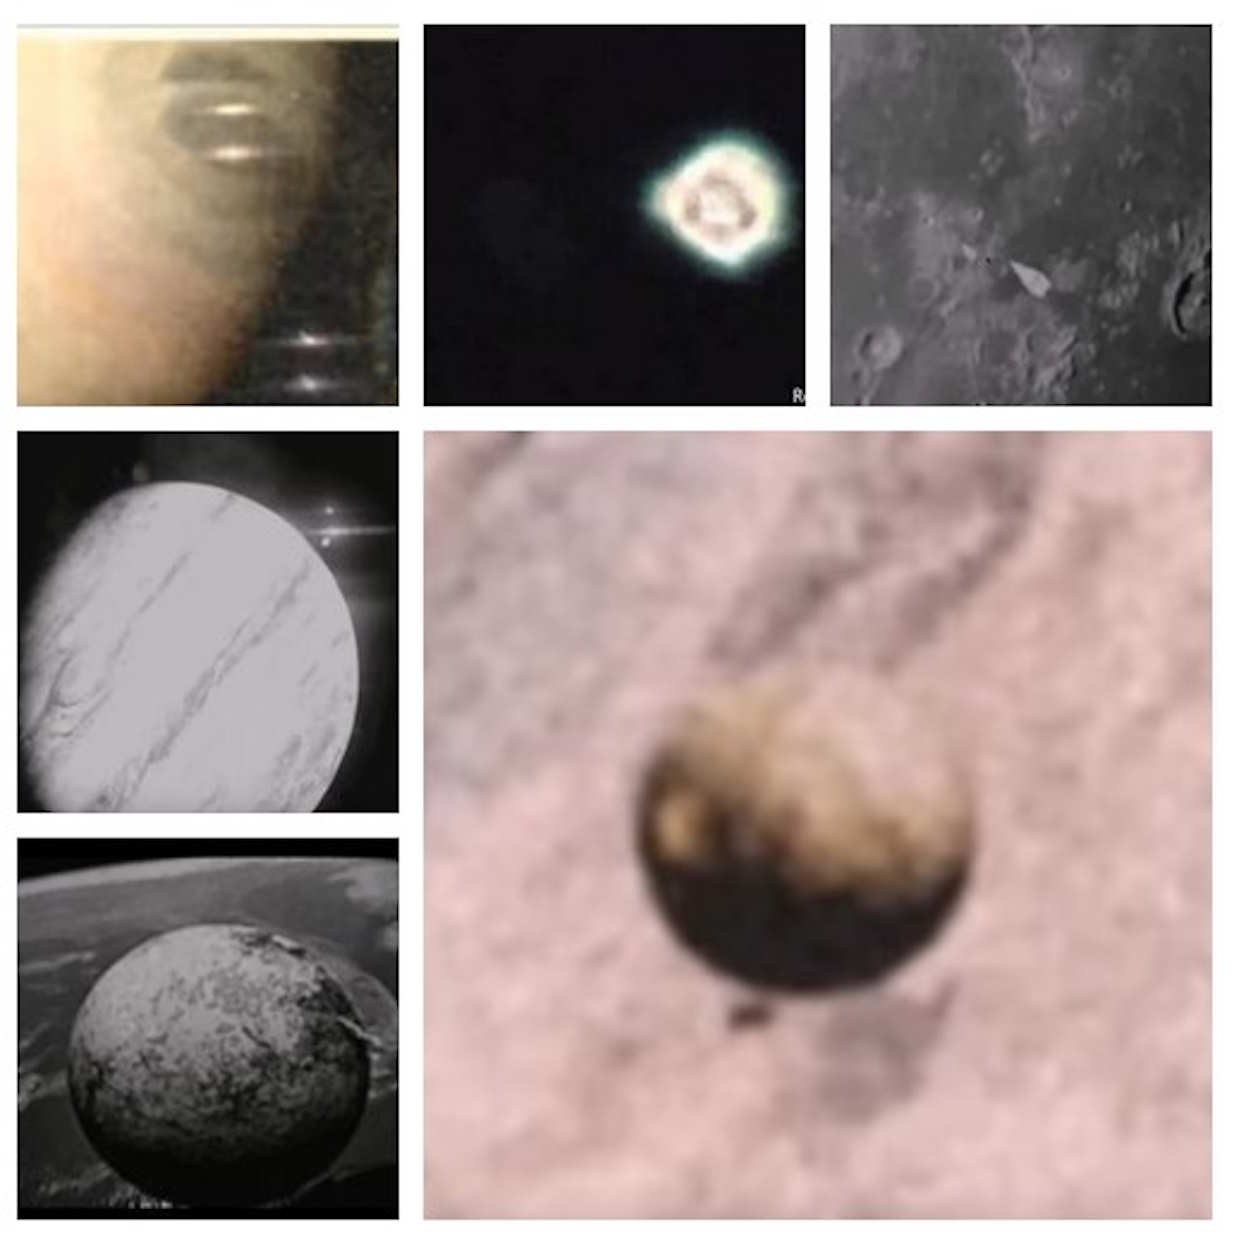 Fotos de planetas, espacio y ovnis en un usb